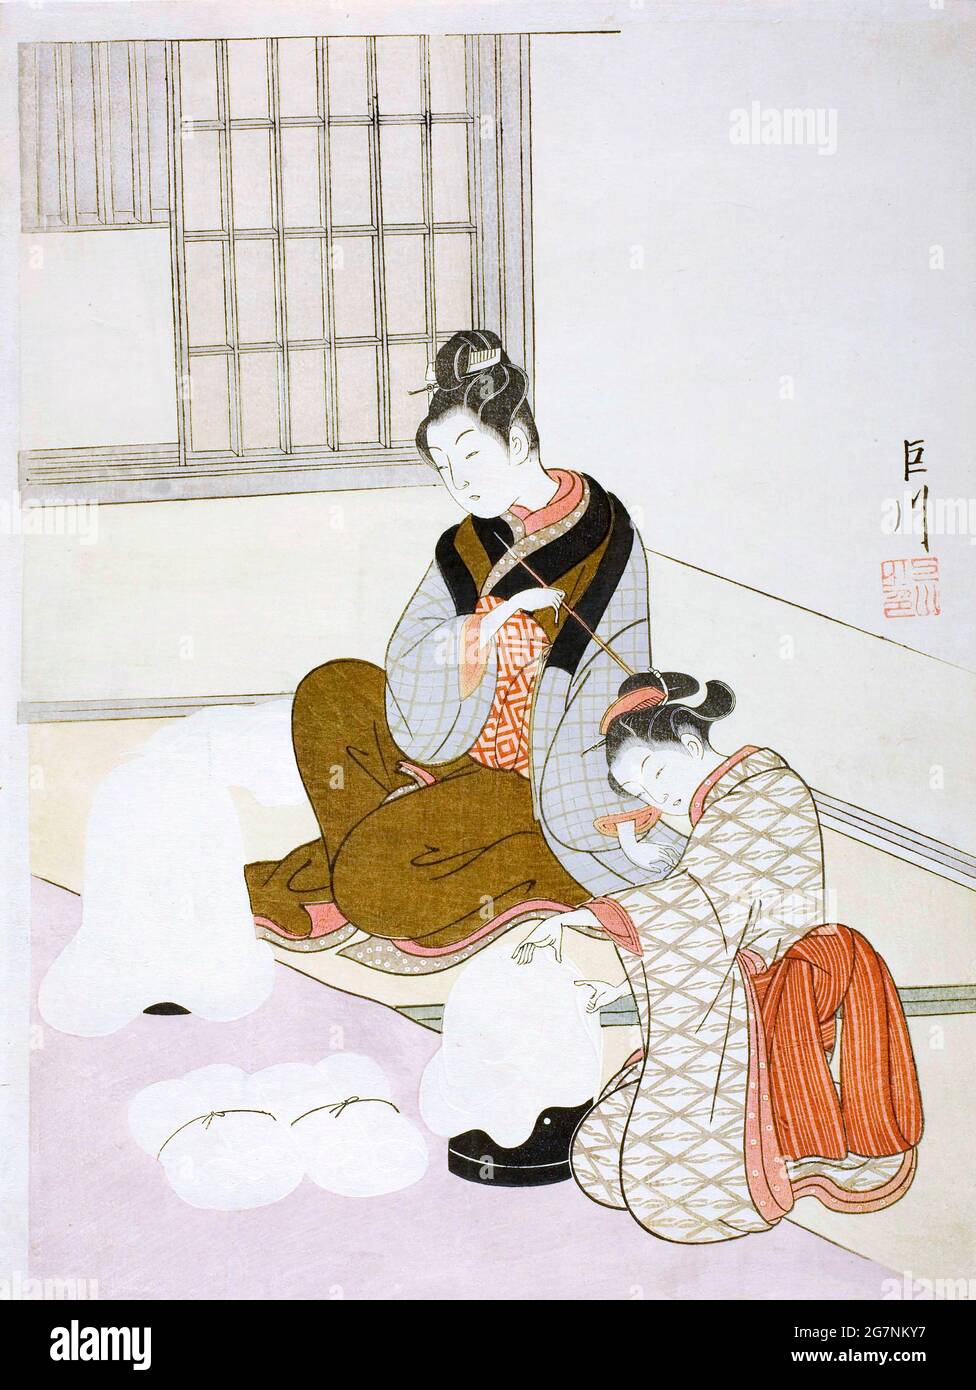 Noche de nieve en un pañal de seda (Nurioke no bosetsu) por Harunobu Suzuki, estampado, 1766 Foto de stock